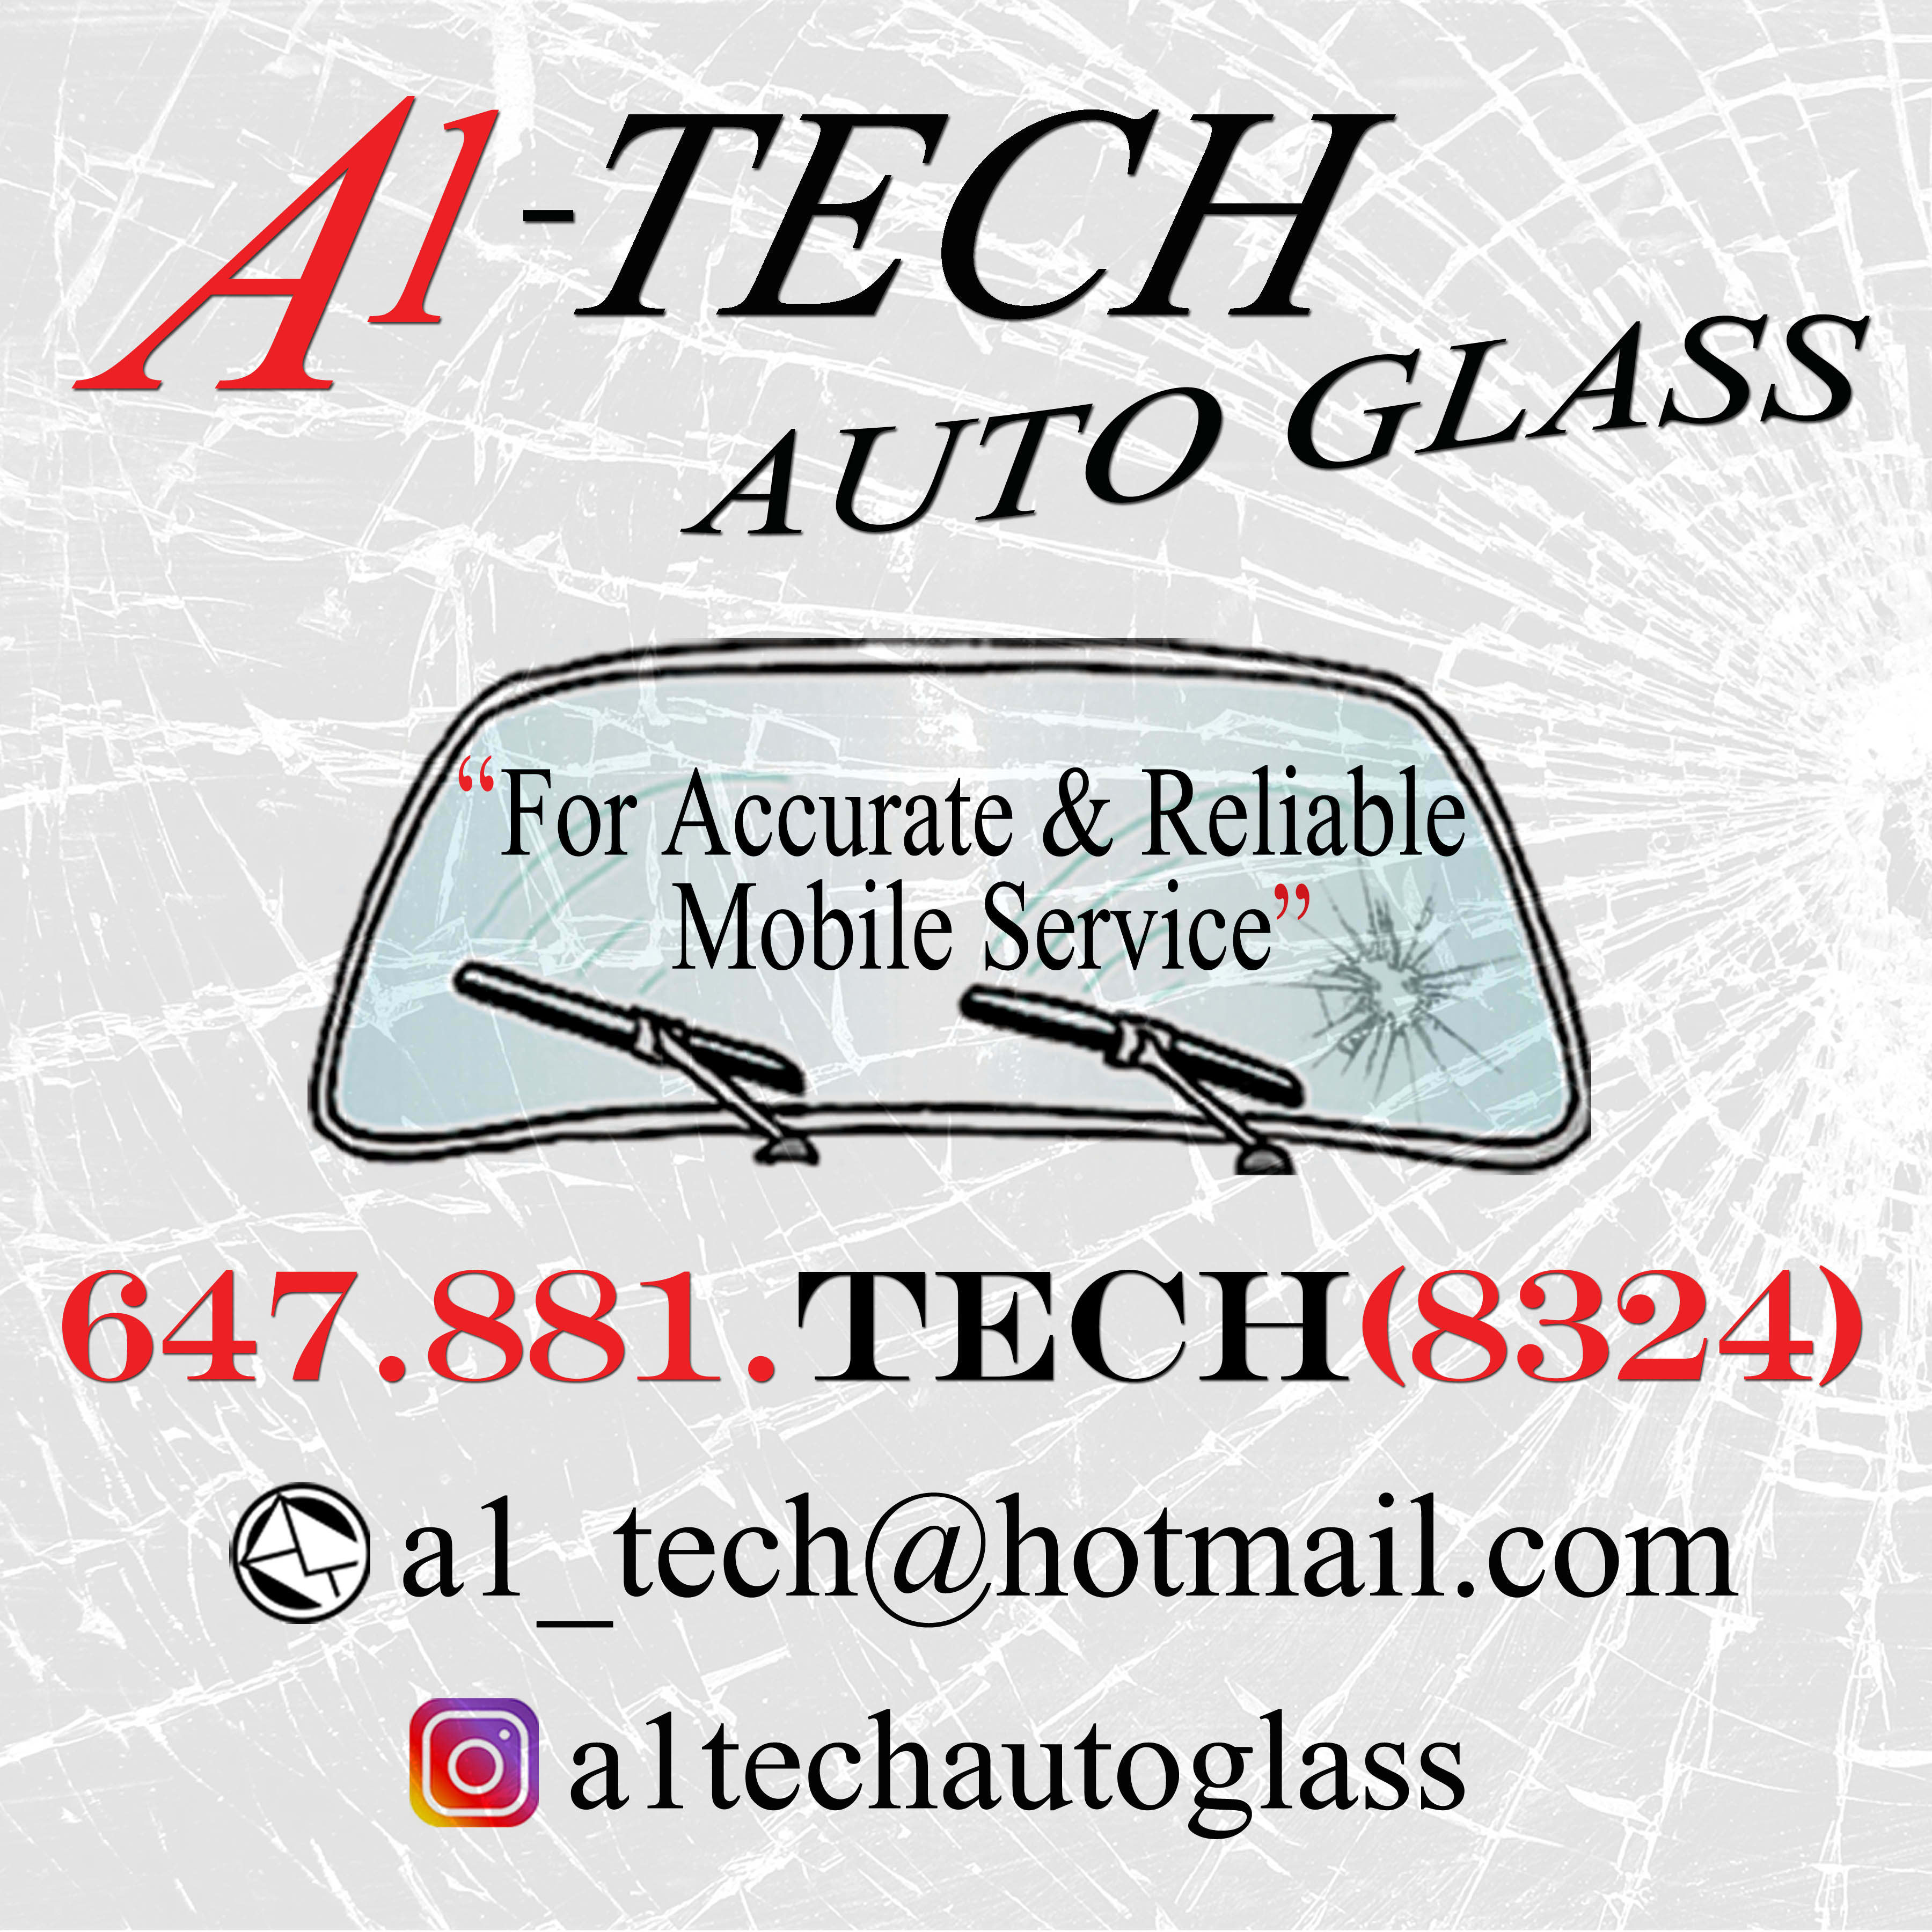 A1-Tech Auto Glass